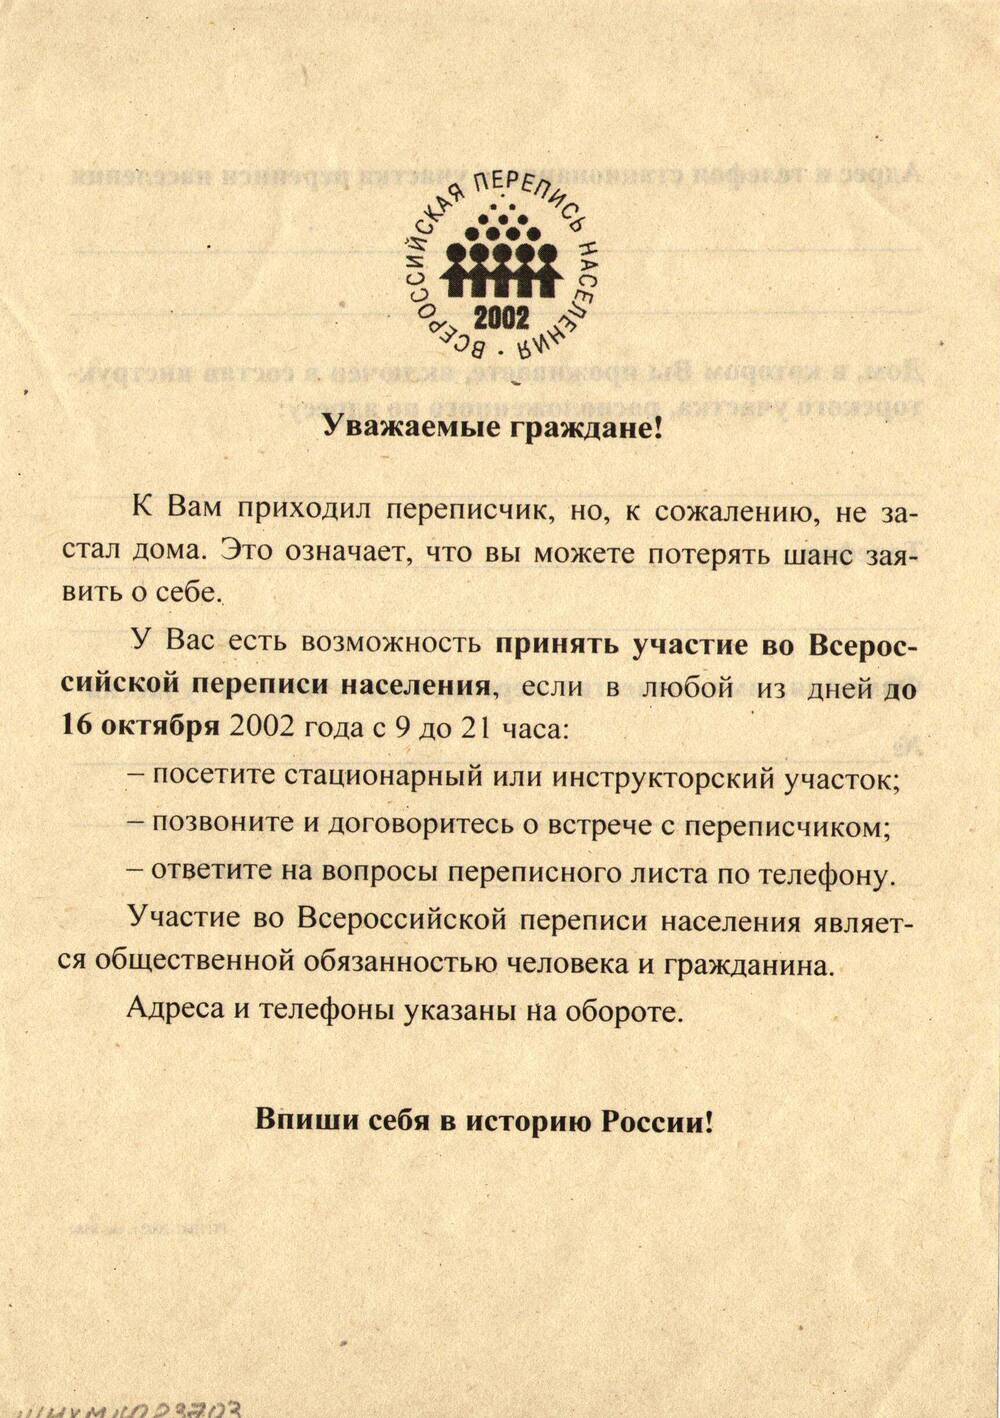 Листовка Всероссийской переписи населения 2002 г.